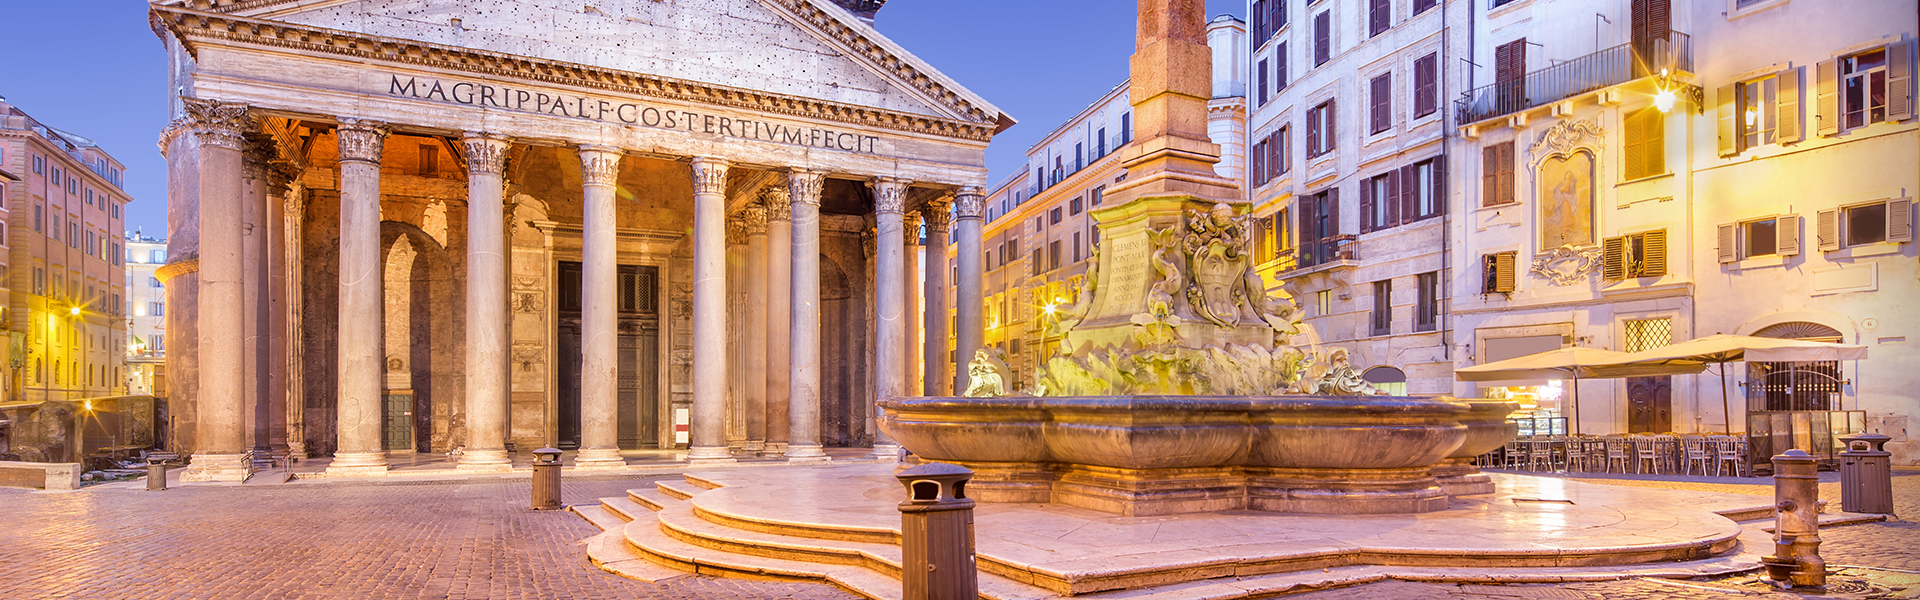 Il Pantheon: tra storia e leggenda